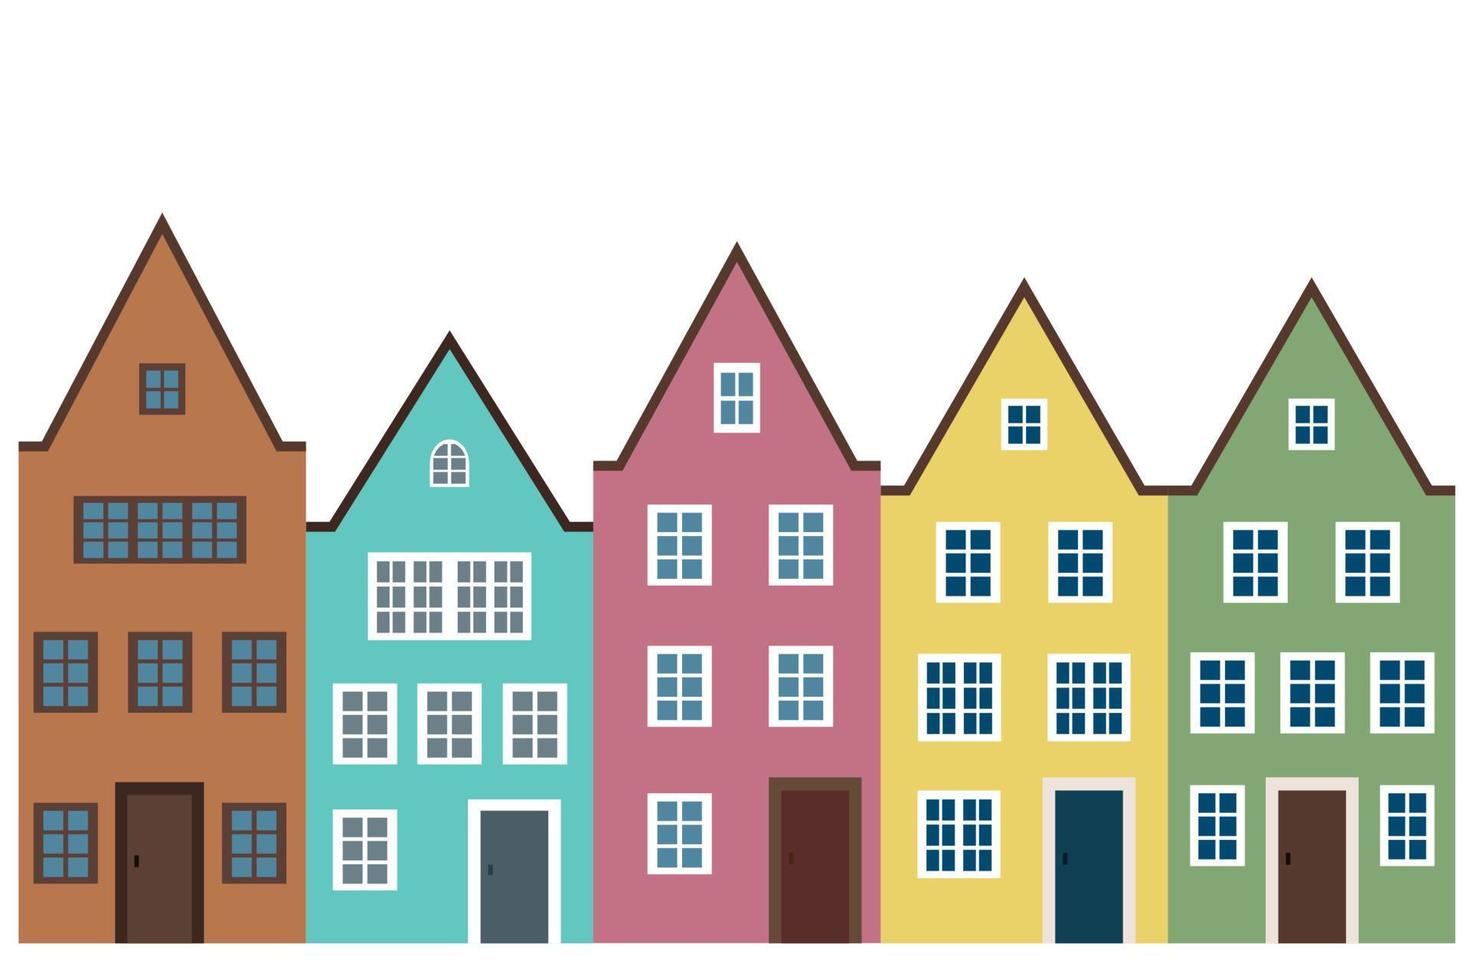 casas multicolores sobre fondo blanco, vector plano, conjunto de cinco casas